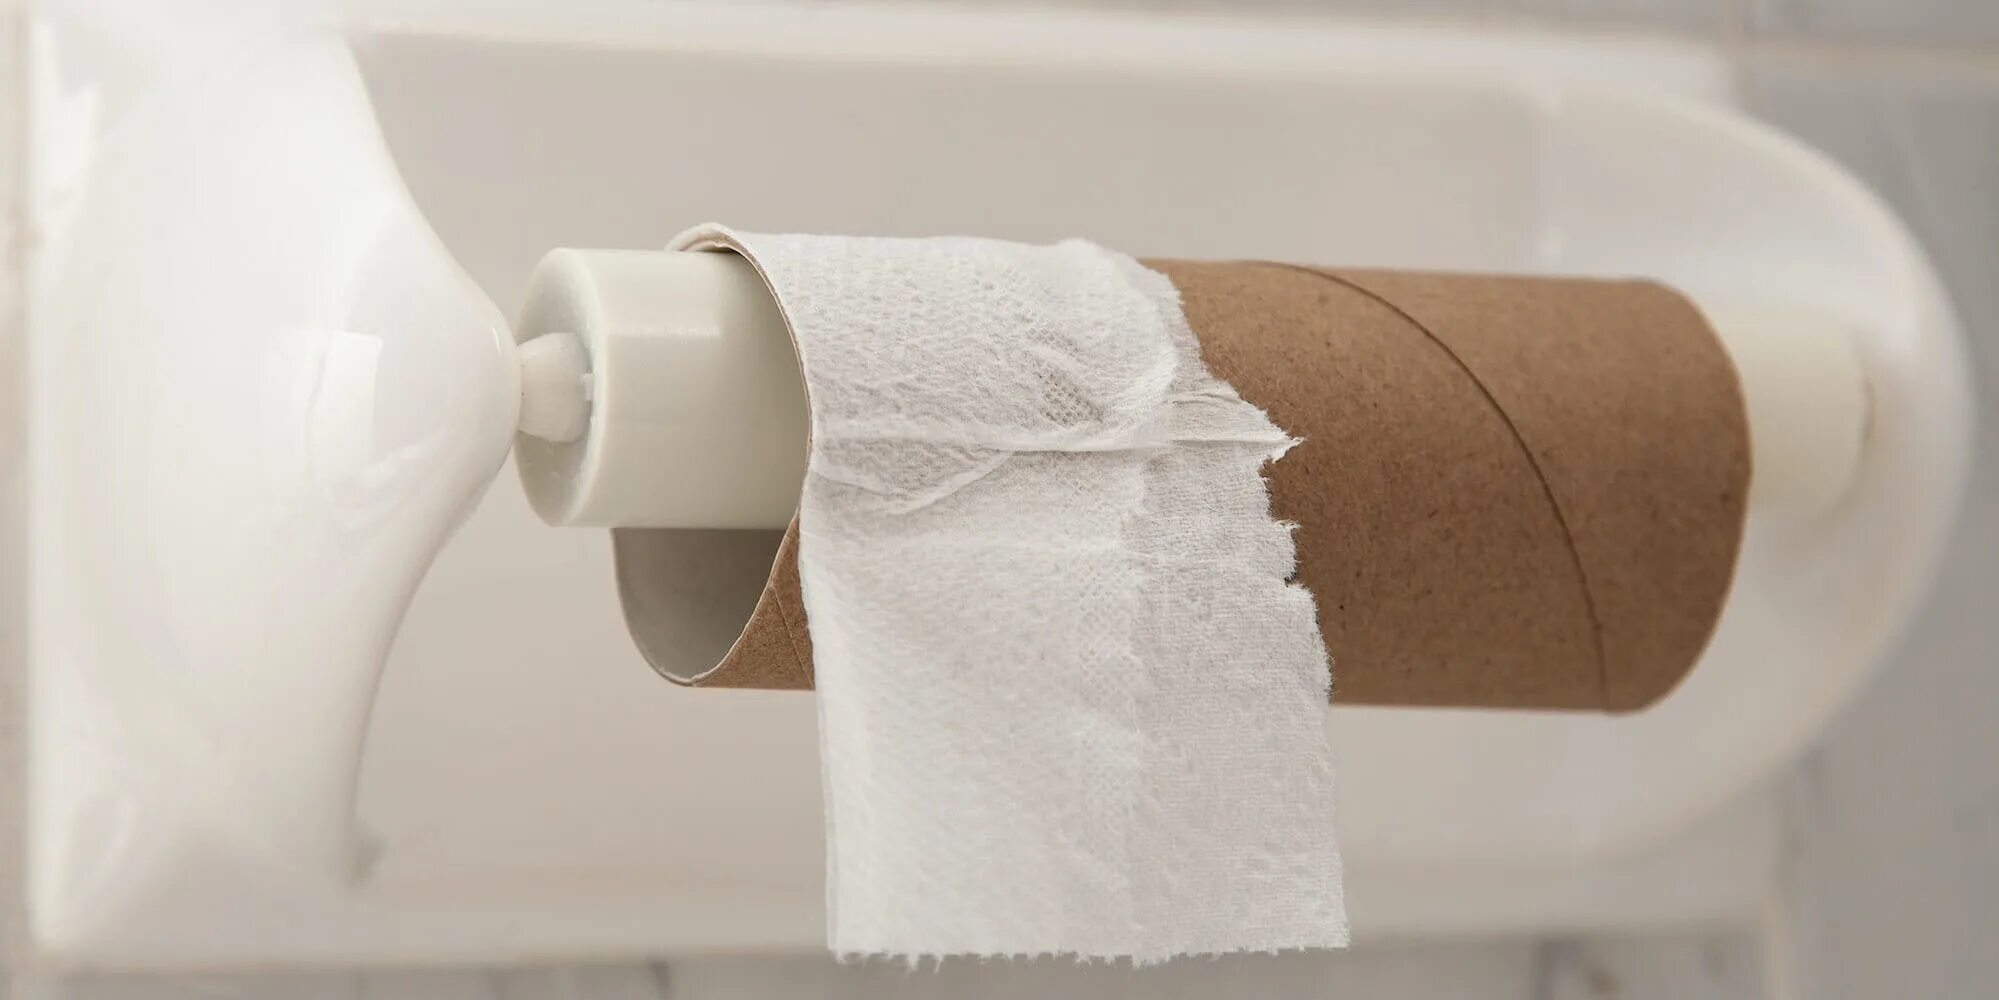 Закончилась туалетная бумага. Заканчивающийся рулон туалетной бумаги. Нет туалетной бумаги. Использованная туалетная бумага. Бумага кончается